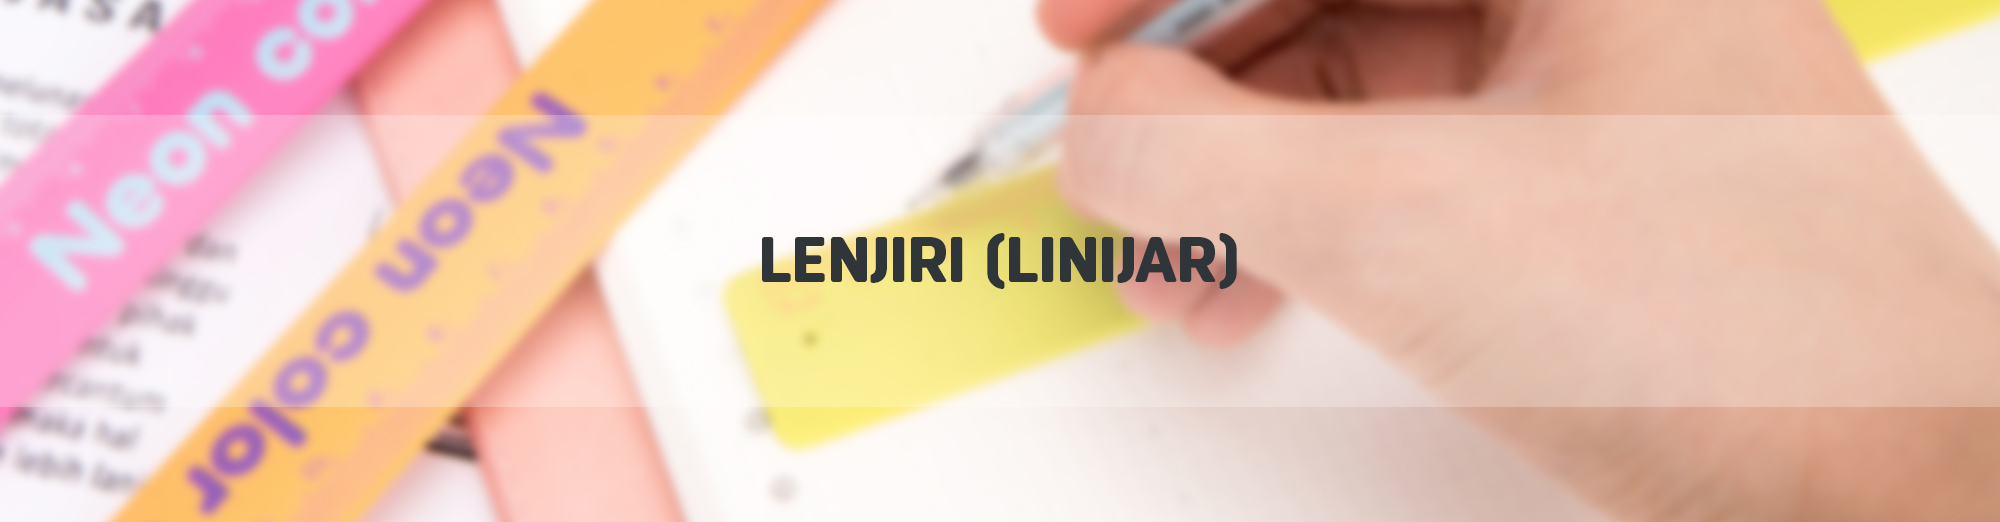 Lenjiri